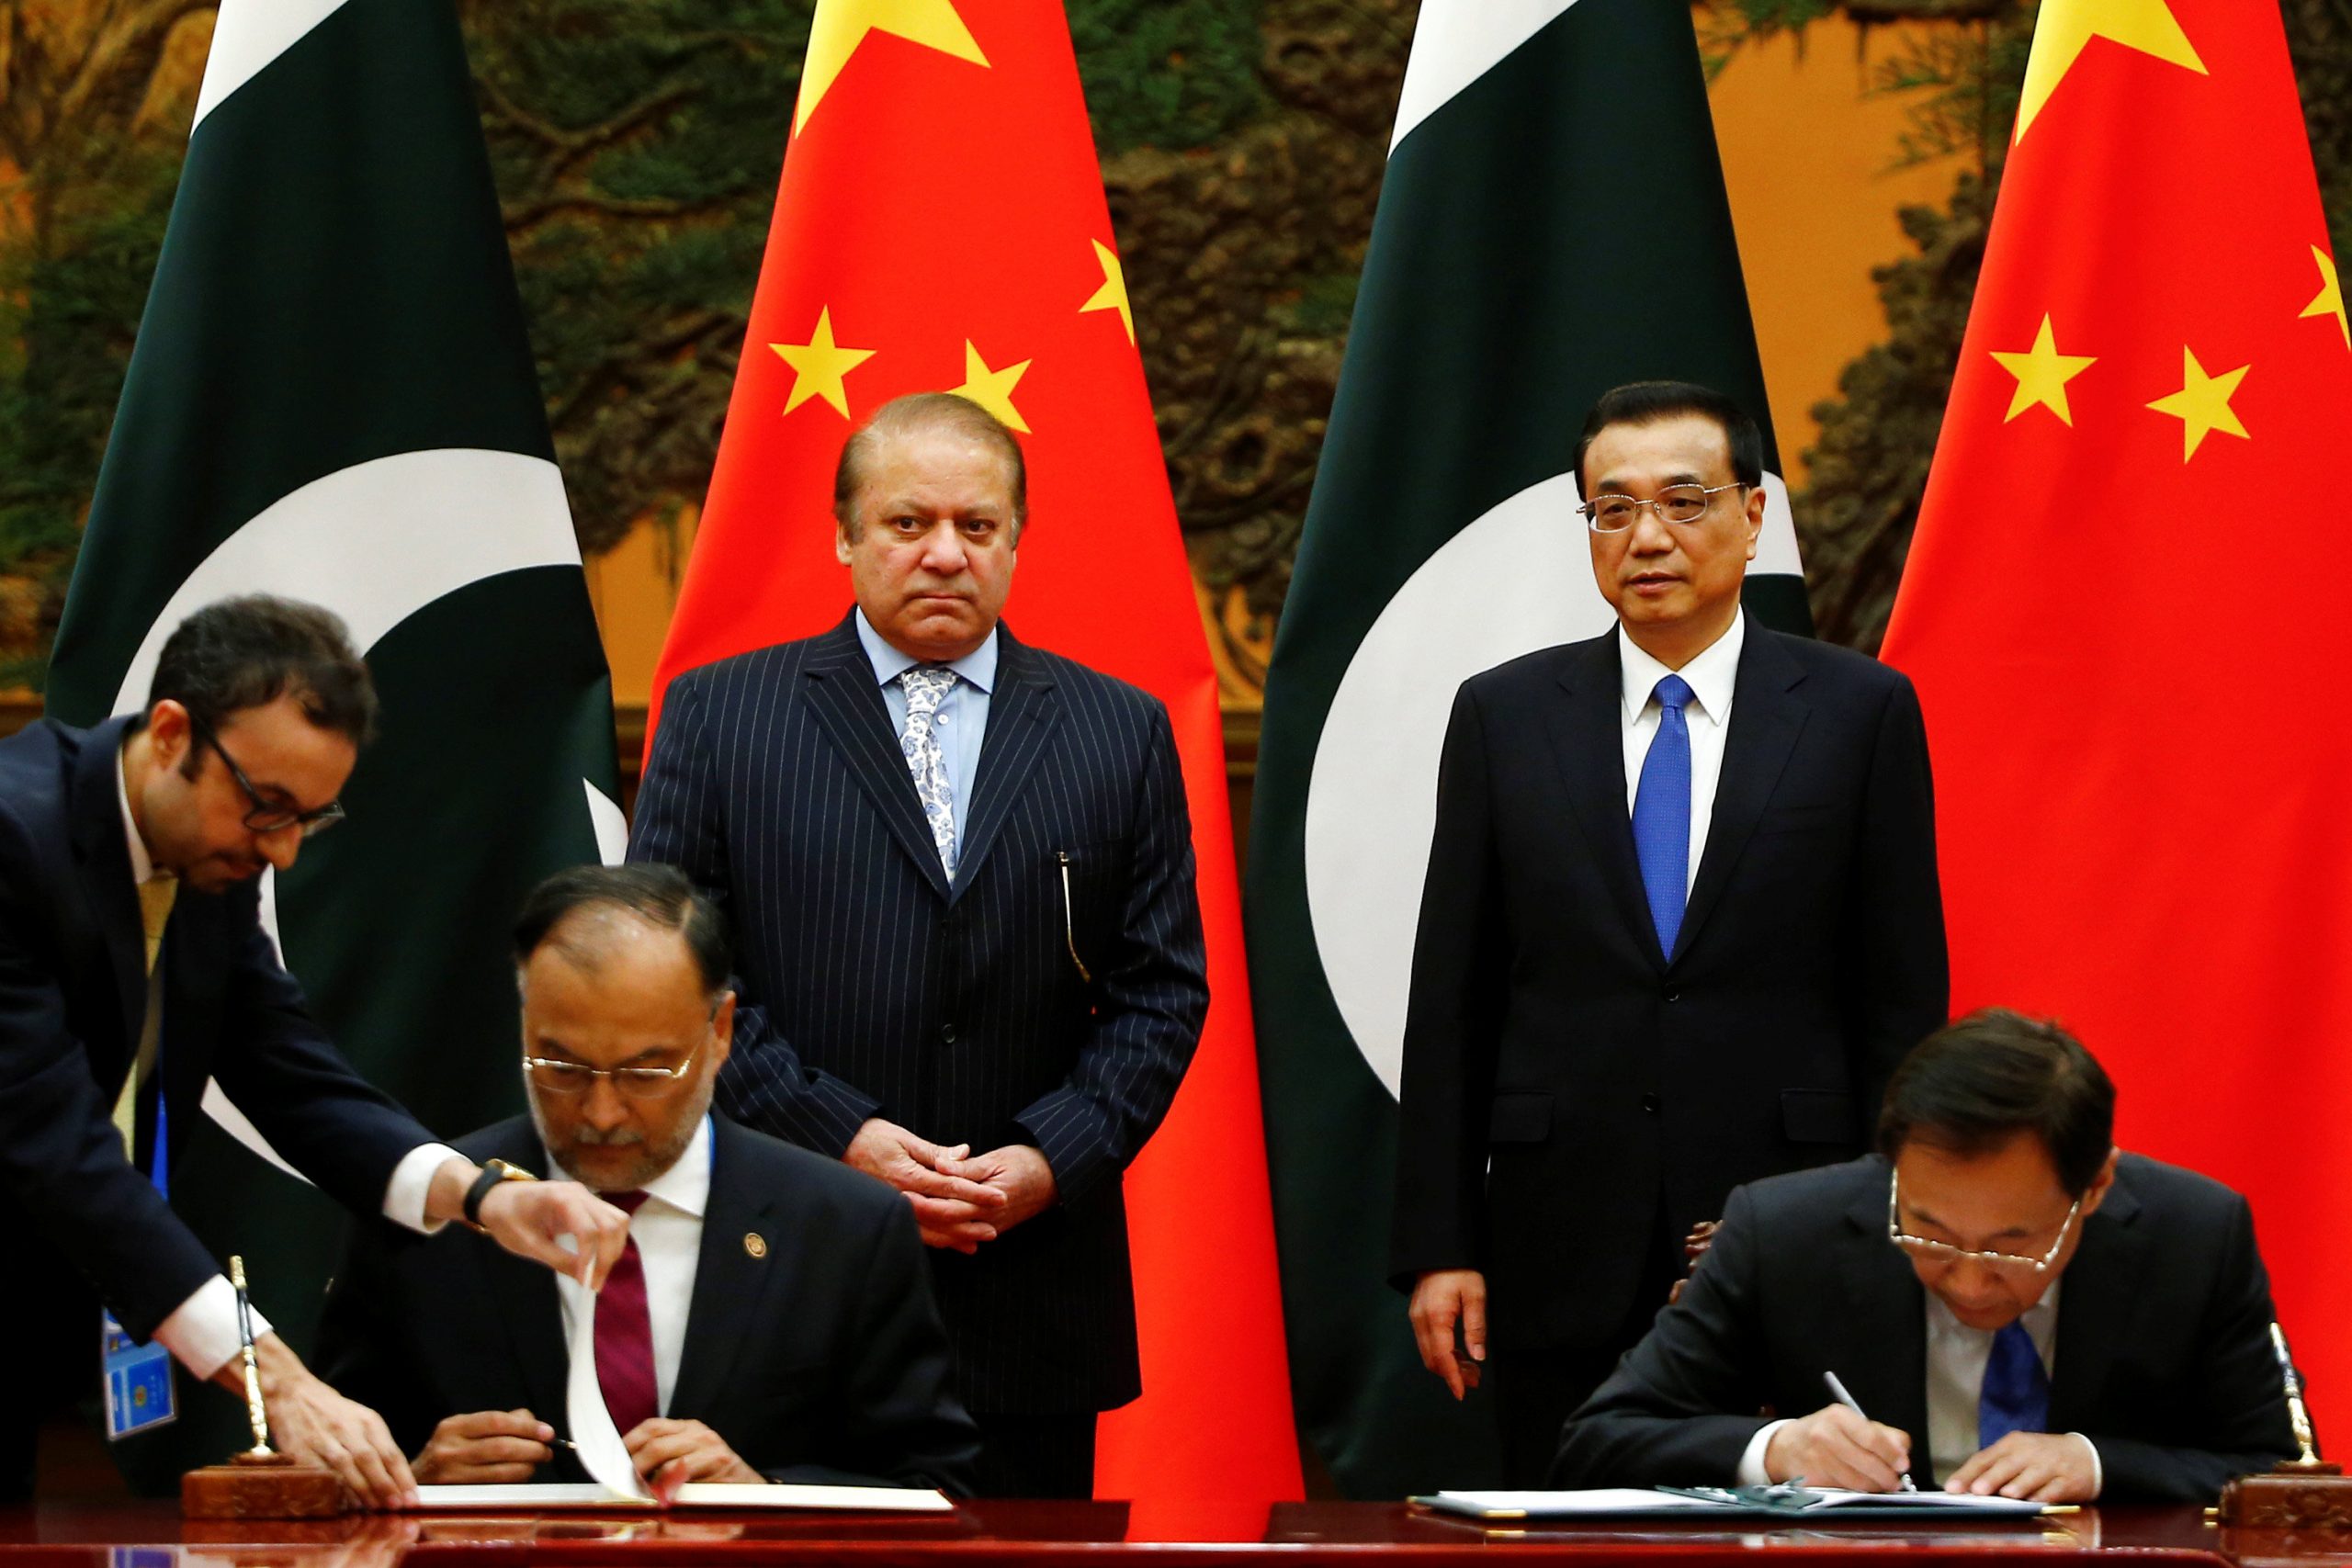 978309 توقيع اتفاقيه صينية باكستانية على هامش الحزام والطريق1697617024 scaled